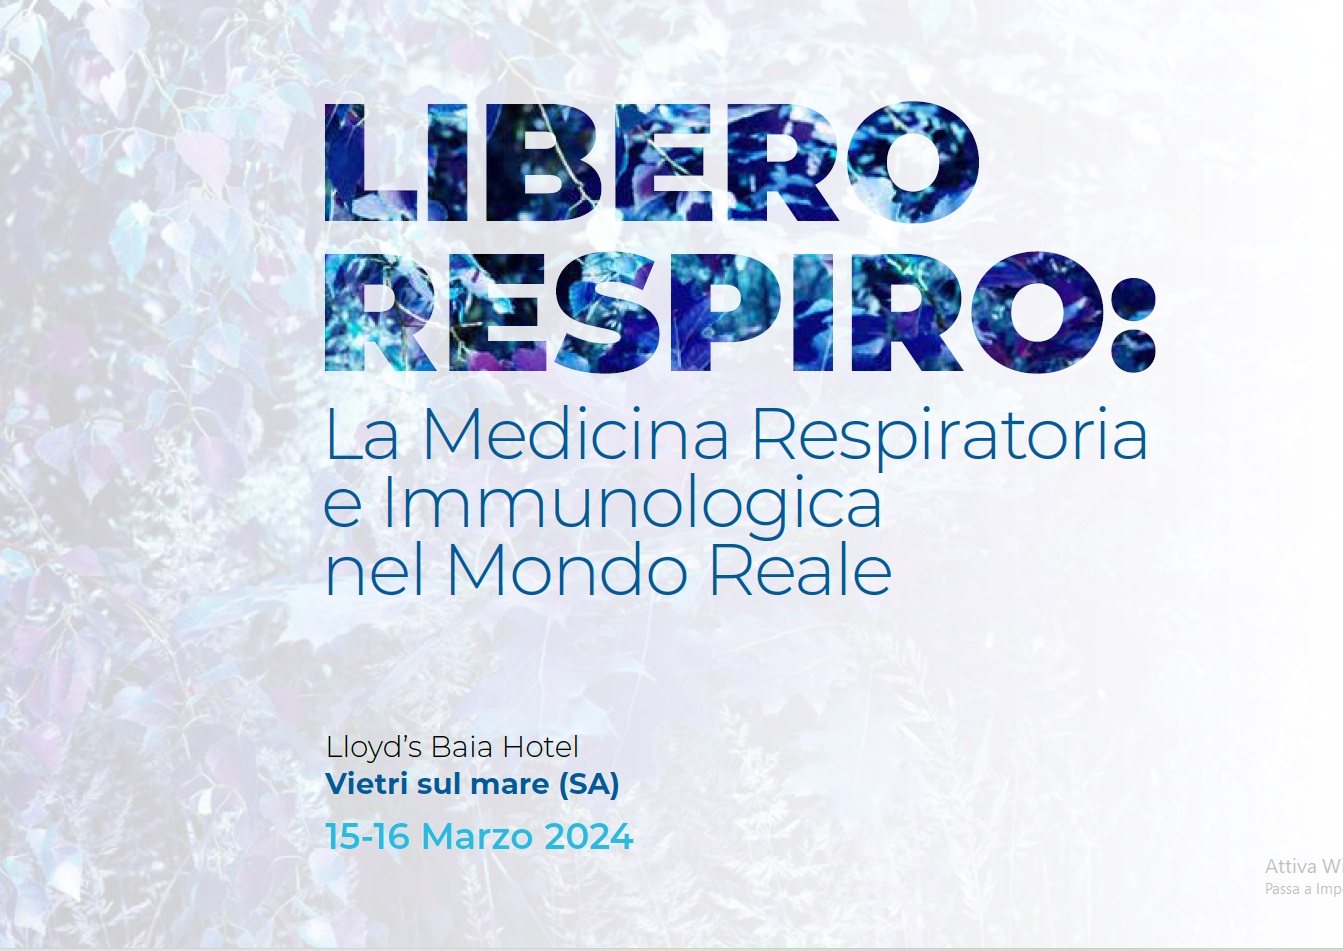 ECM LIBERO RESPIRO: LA MEDICINA RESPIRATORIA E IMMUNOLOGICA NEL MONDOREALE